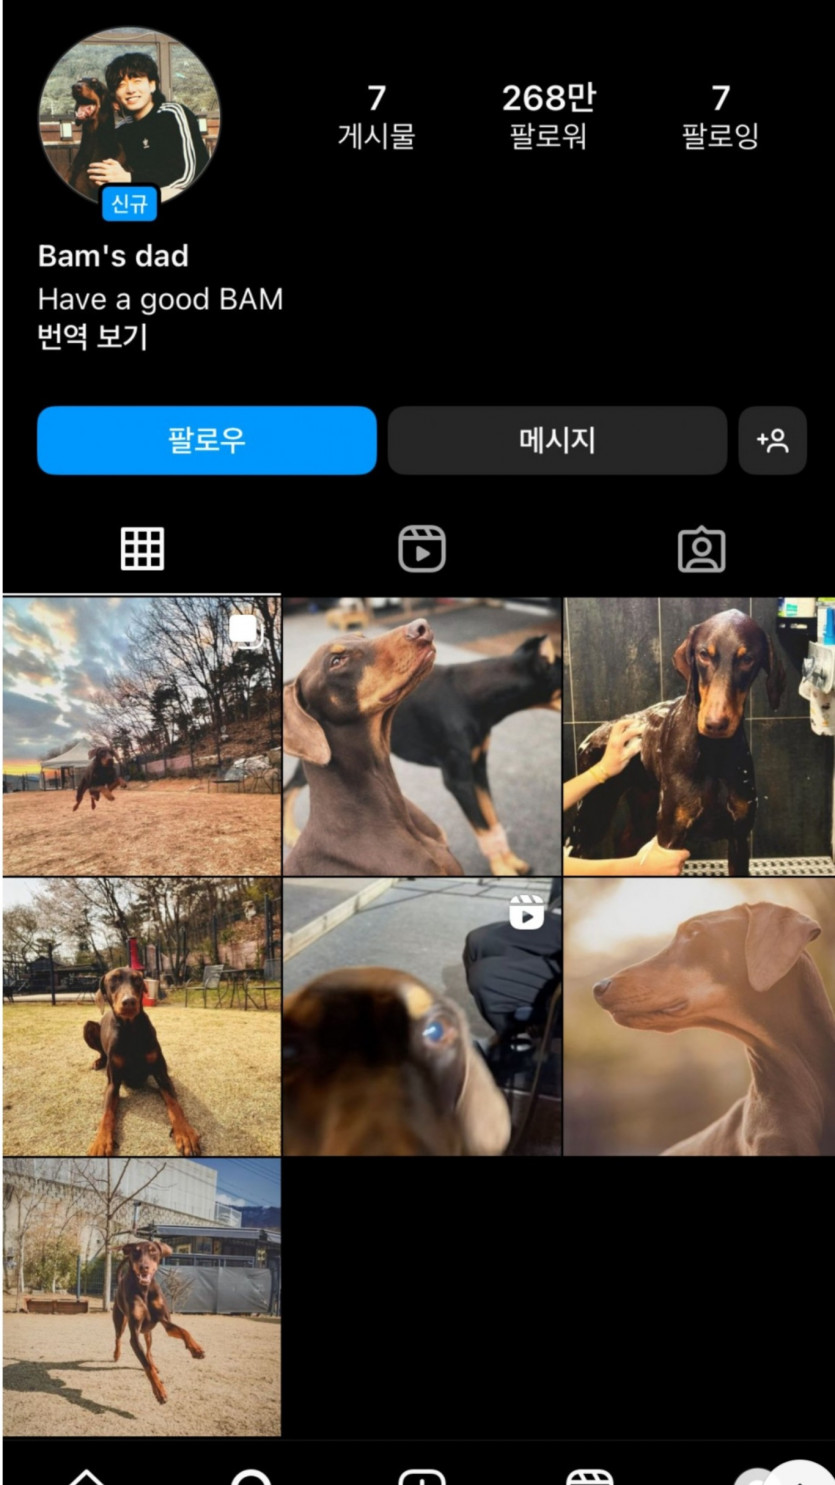 강아지 인스타 개설 하루만에 268만 팔로워(0)